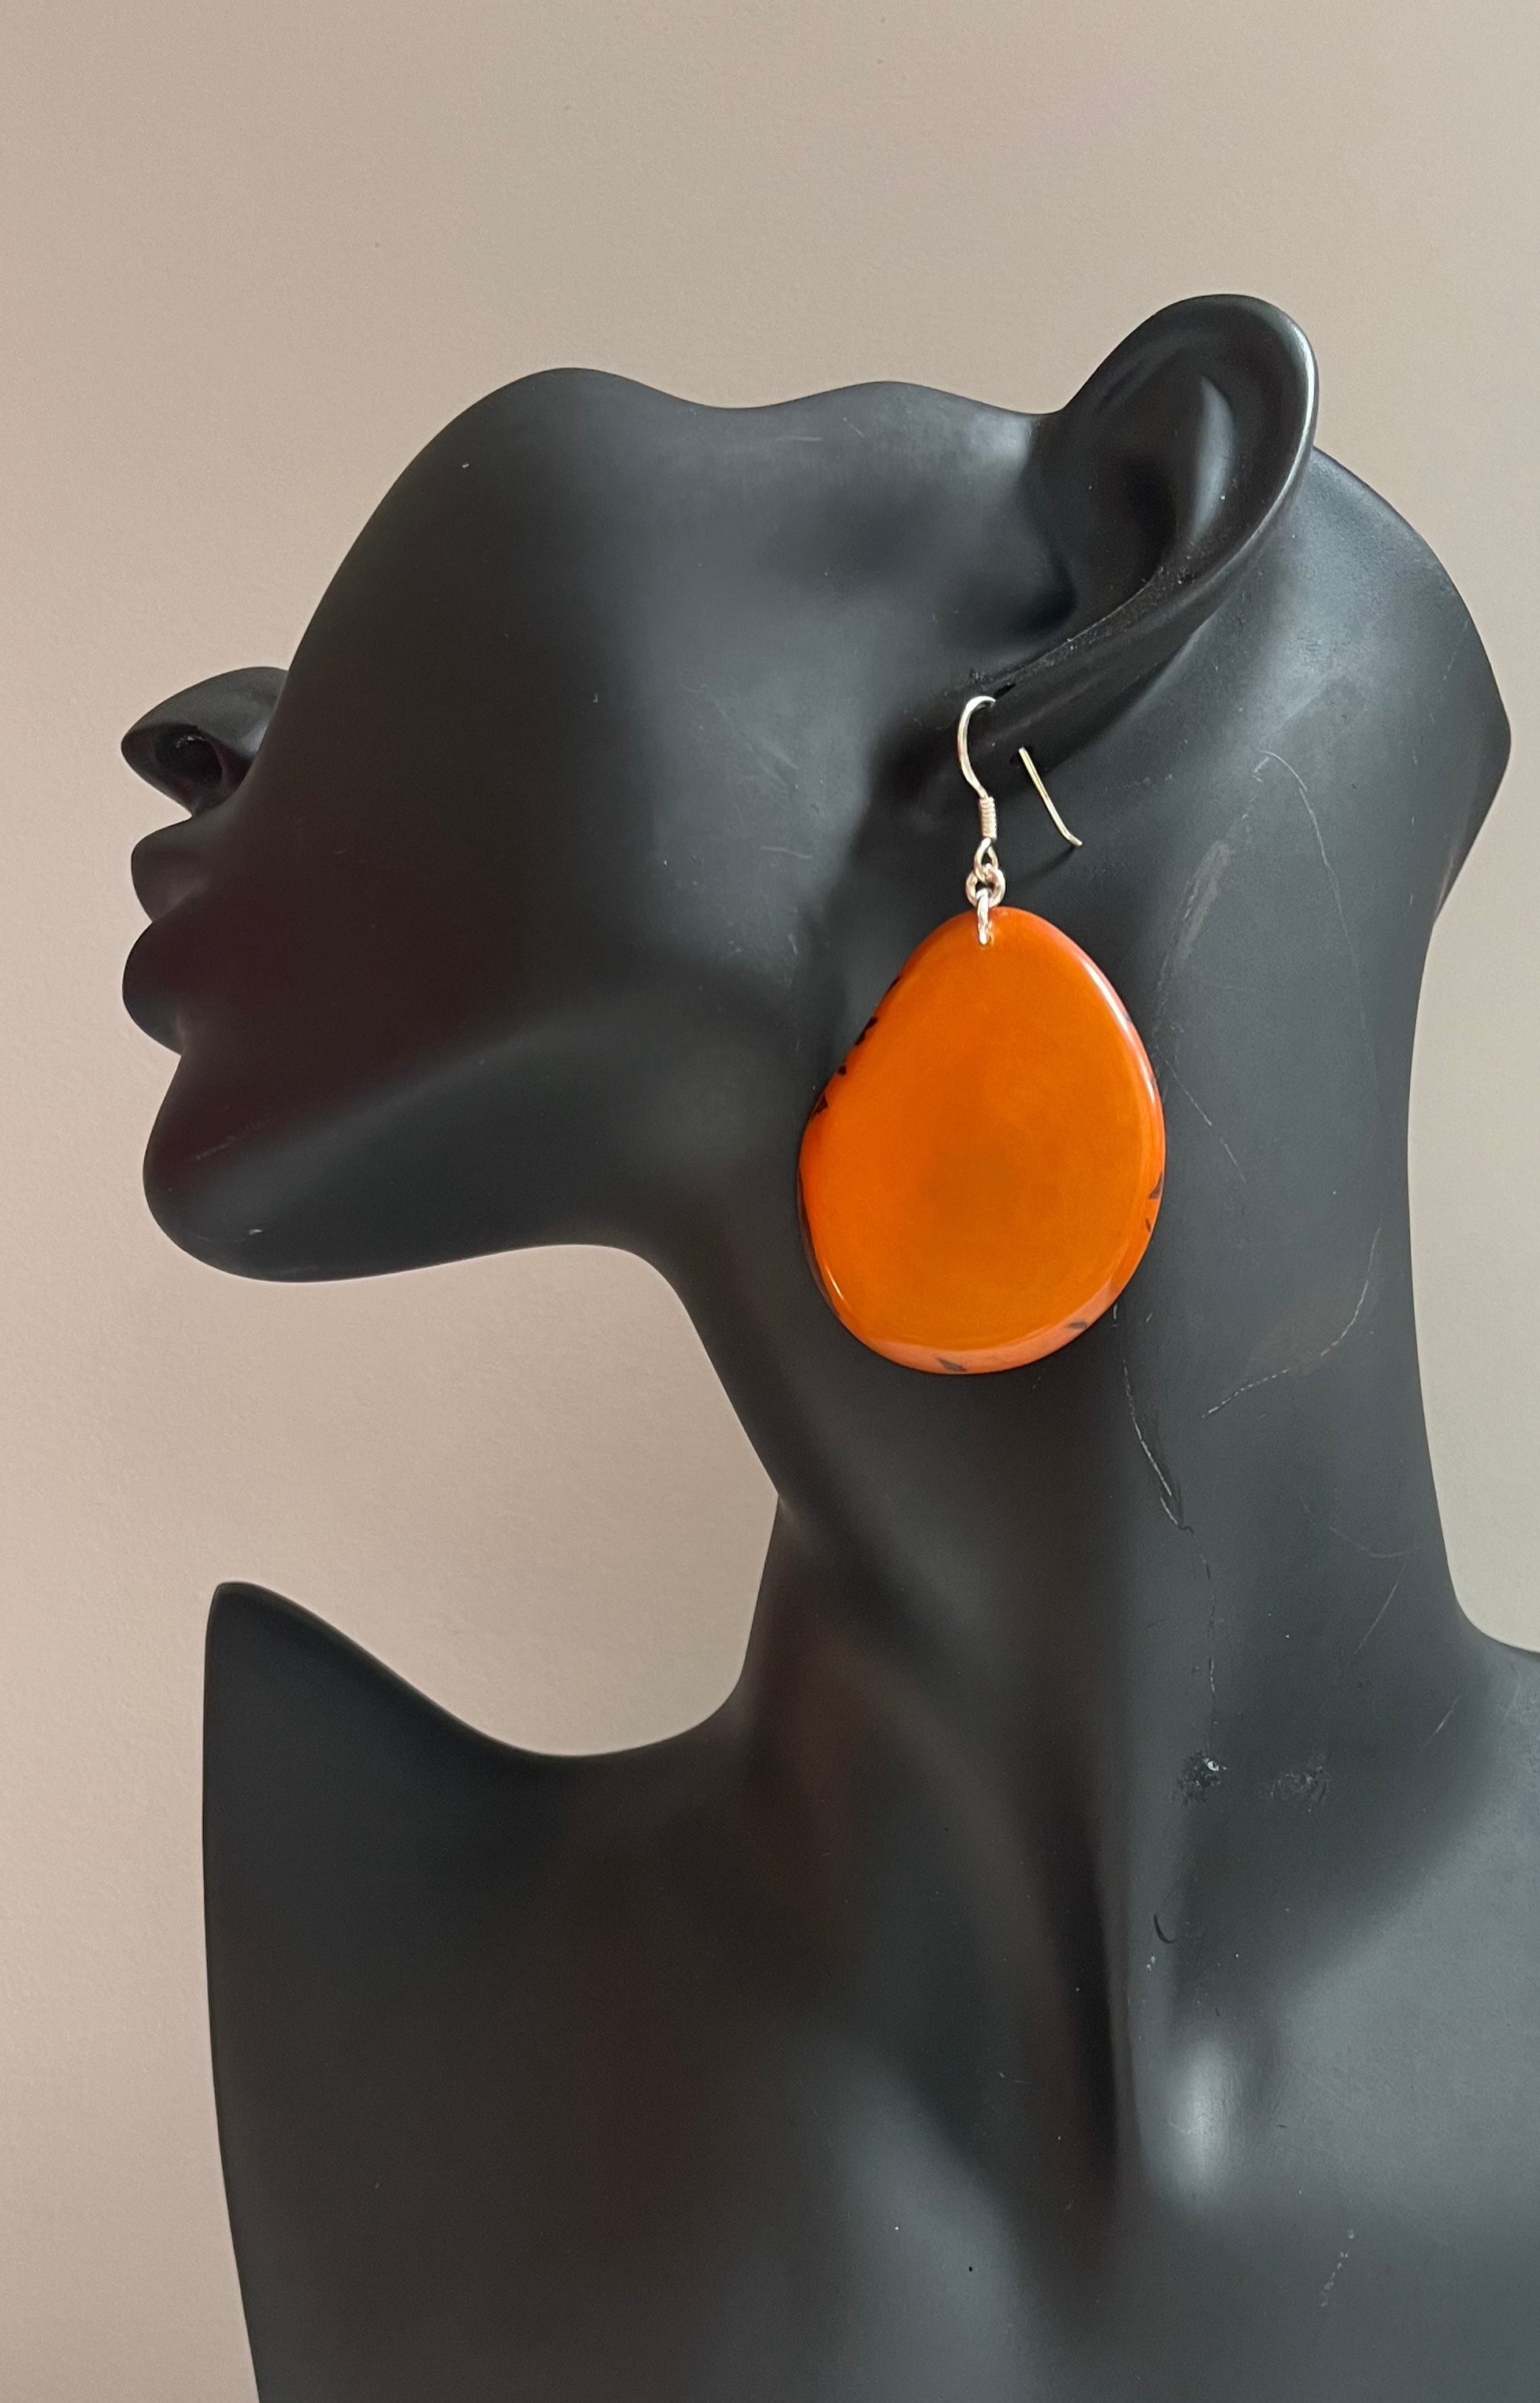 Folha Earrings Orange